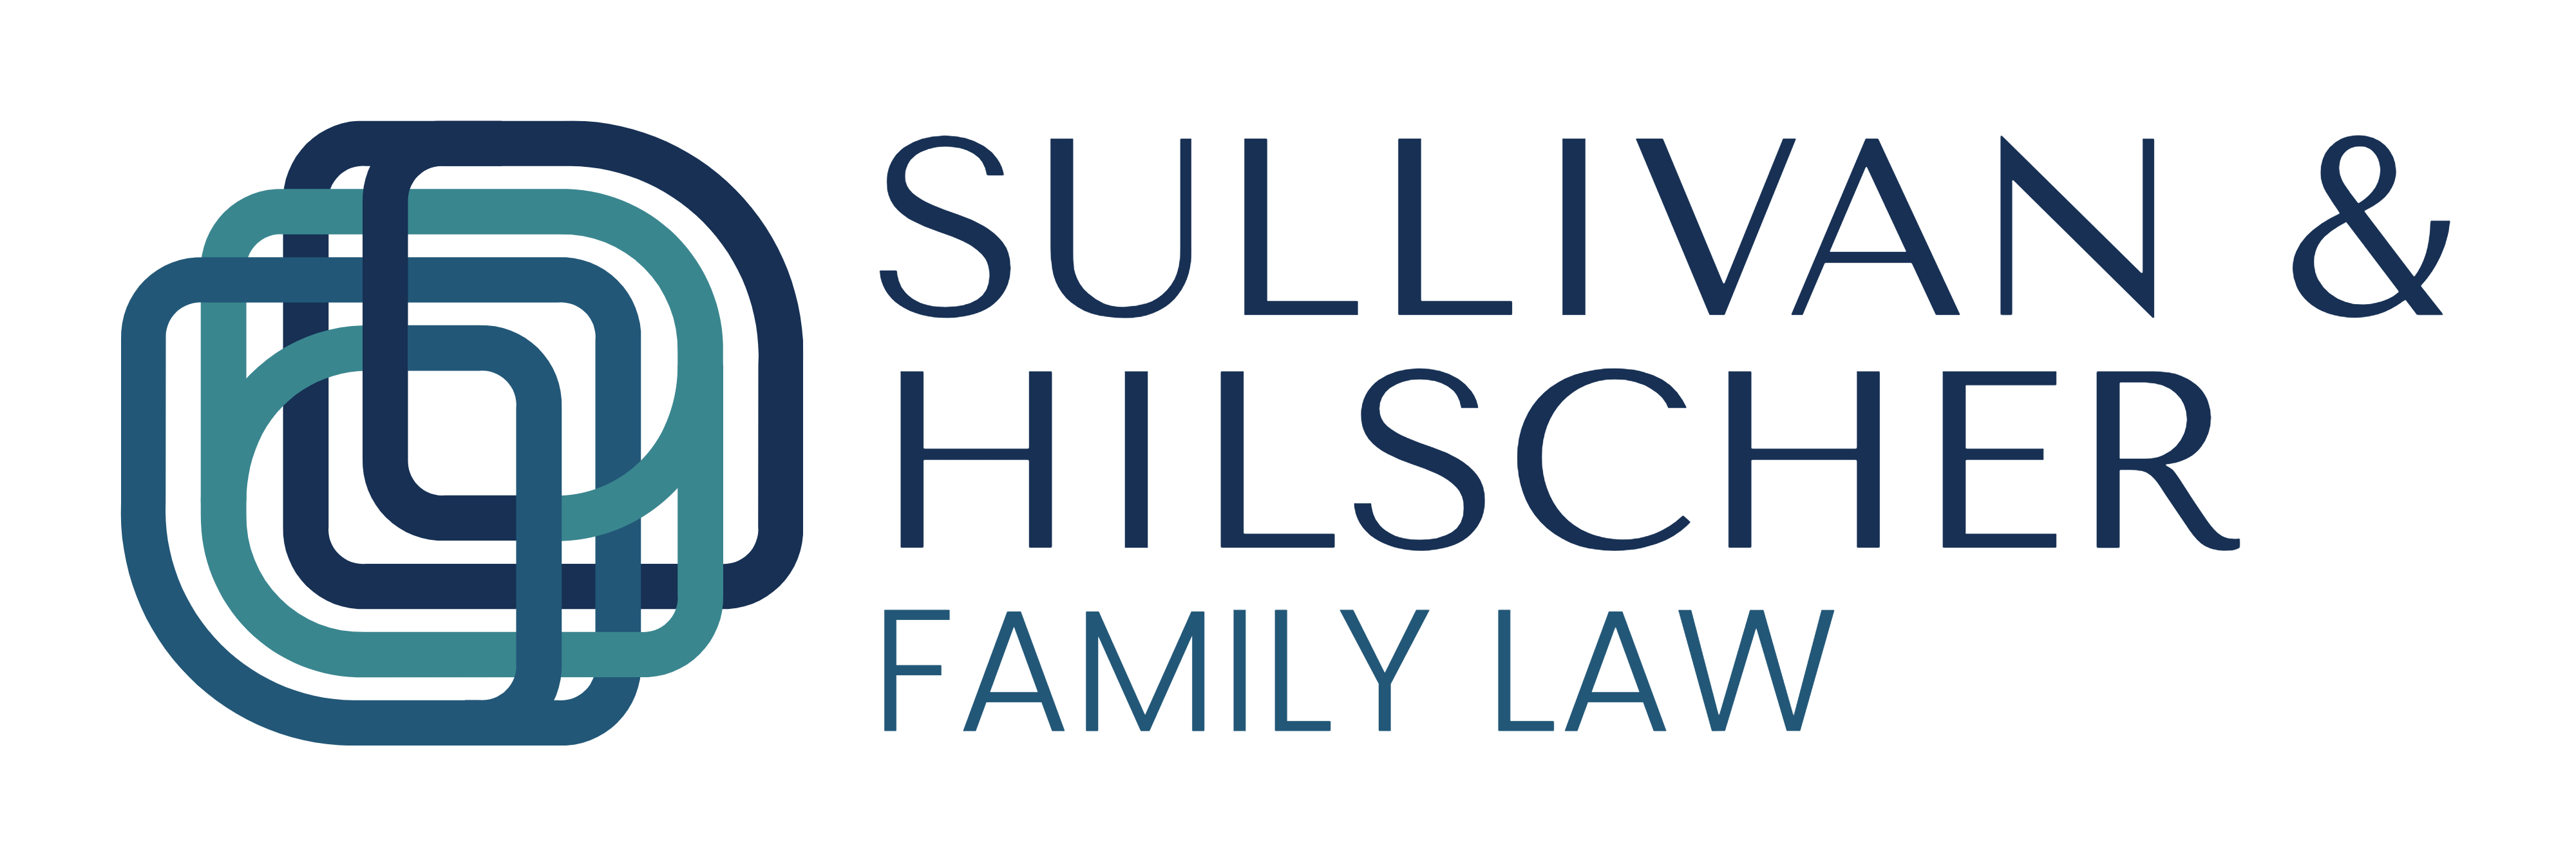 Sullivan & Hilscher Family Law, logo